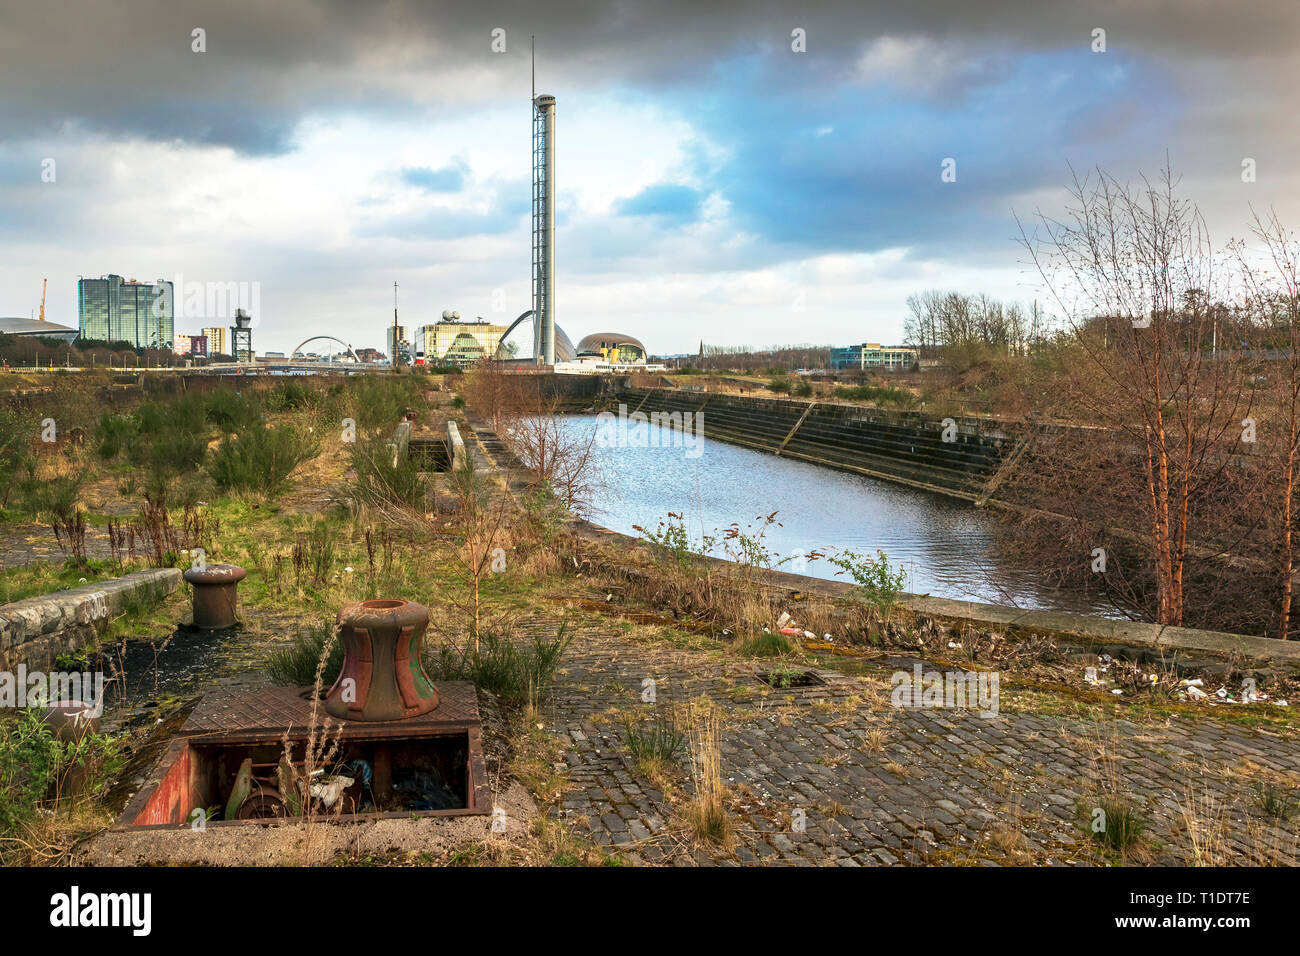 Govan graving docks, Govan, River Clyde, Glasgow, Scotland, UK Stock Photo